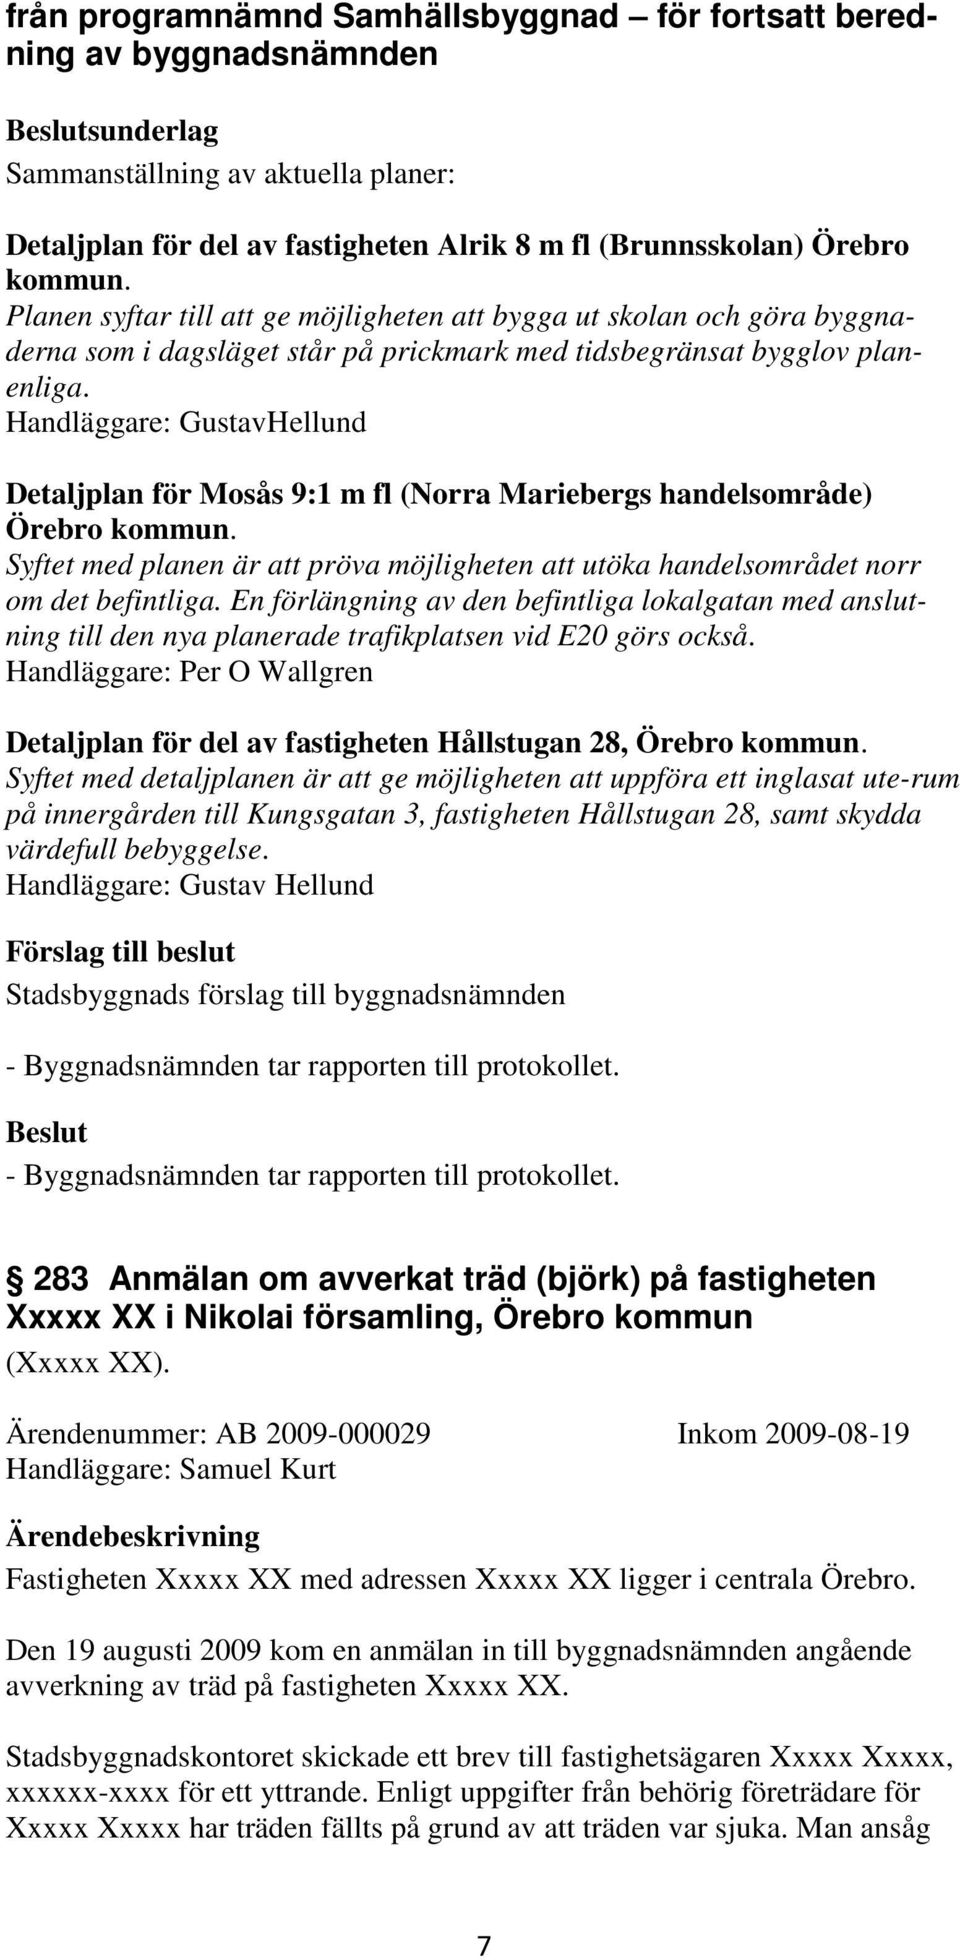 Handläggare: GustavHellund Detaljplan för Mosås 9:1 m fl (Norra Mariebergs handelsområde) Örebro kommun. Syftet med planen är att pröva möjligheten att utöka handelsområdet norr om det befintliga.